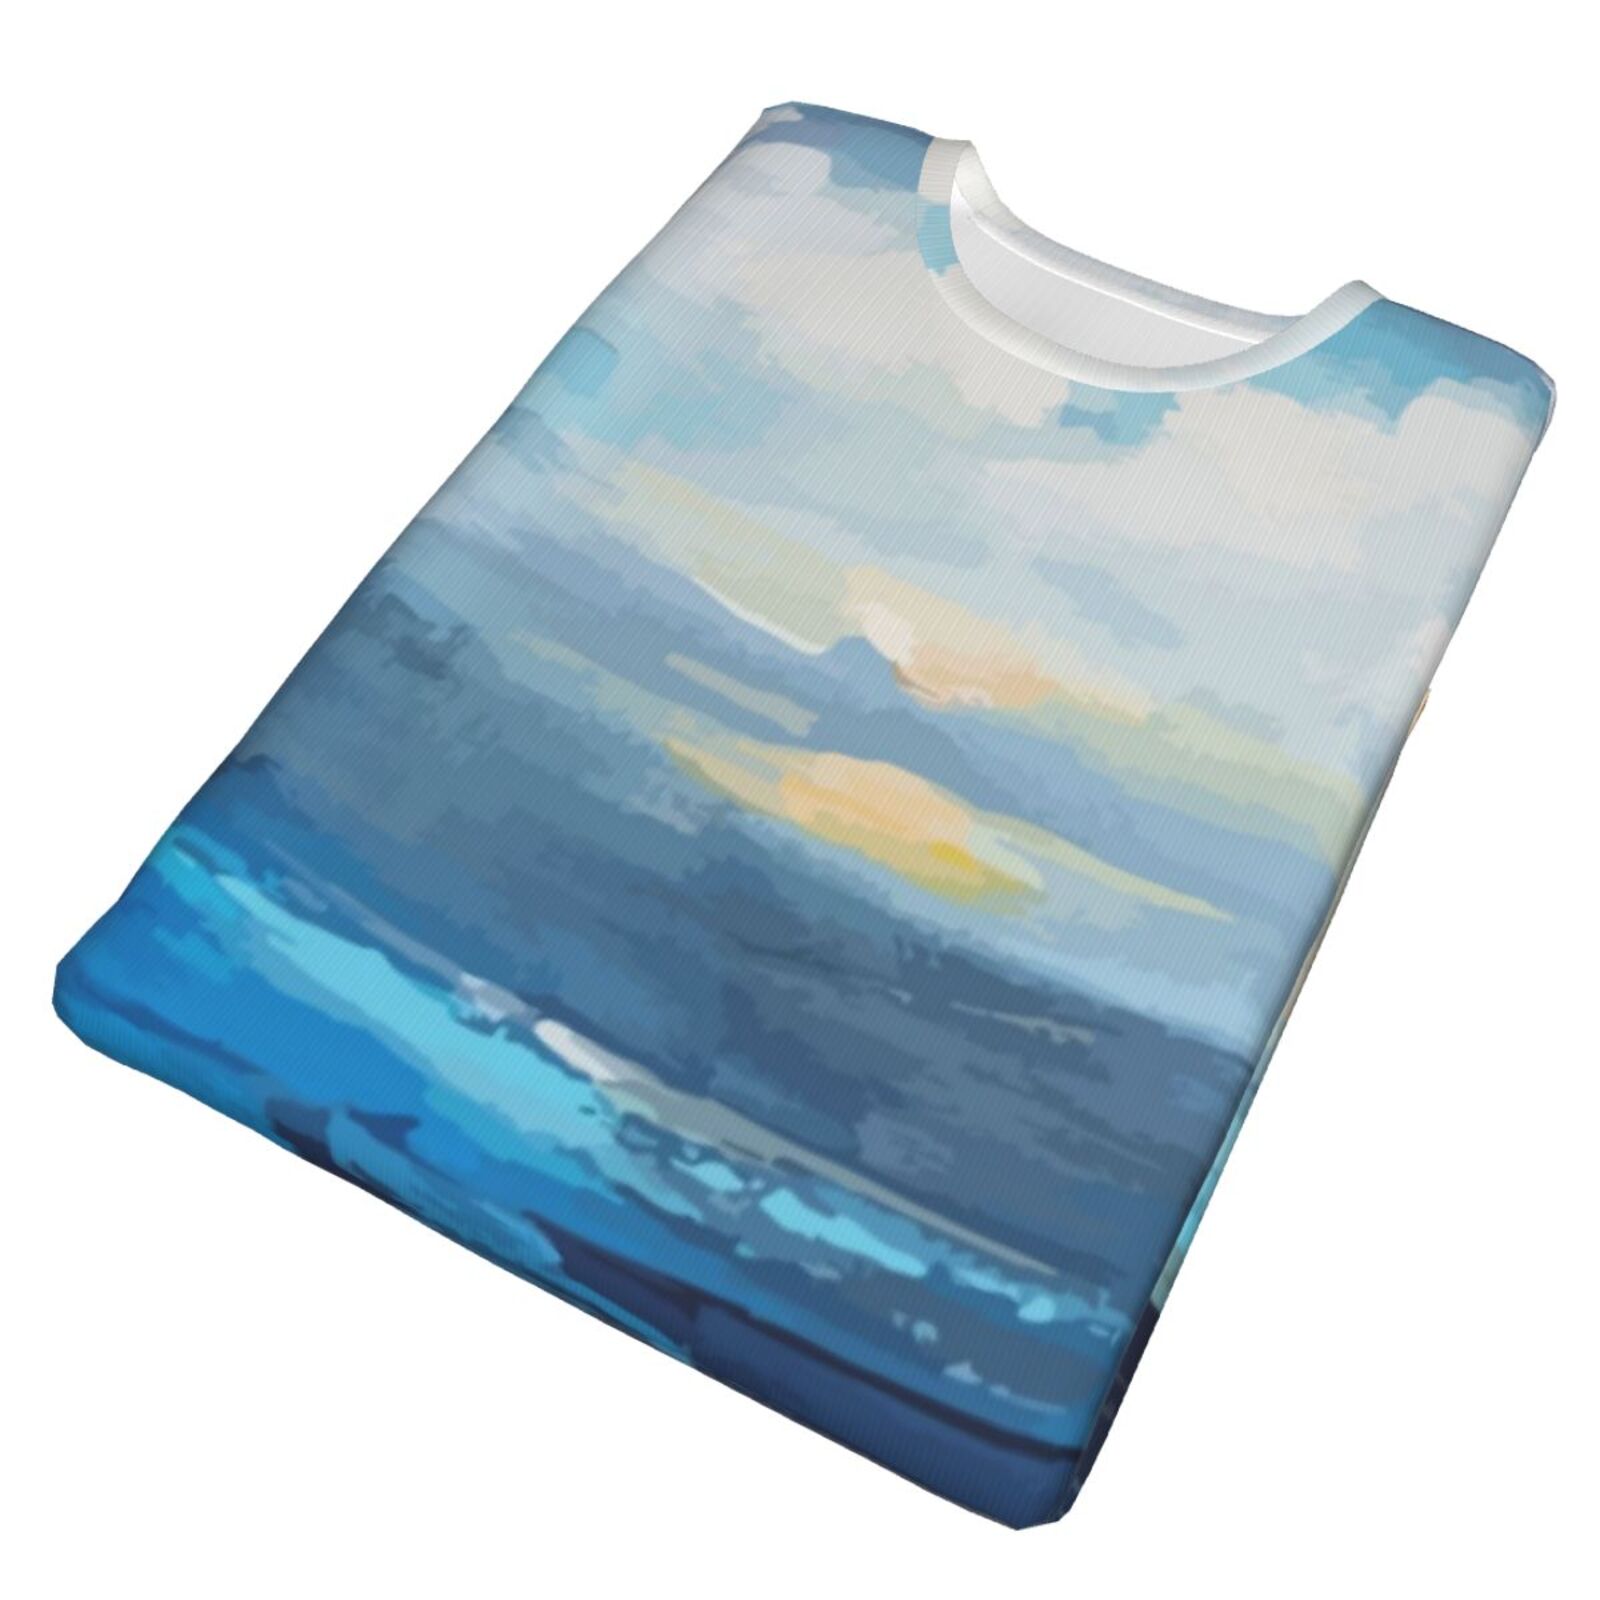 אלמנטים של ציור מפרץ קטן חולצת טריקו קלאסית